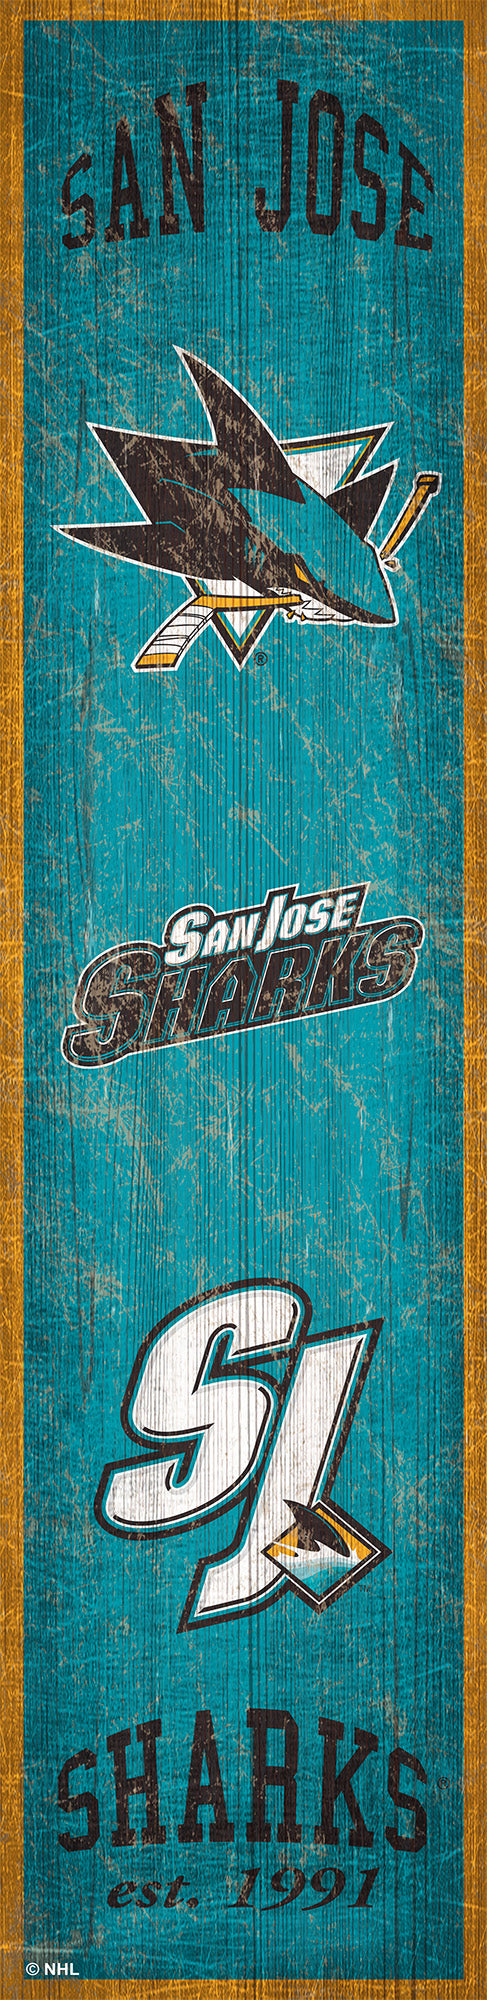 San Jose Sharks Heritage Banner Wood Sign - 6